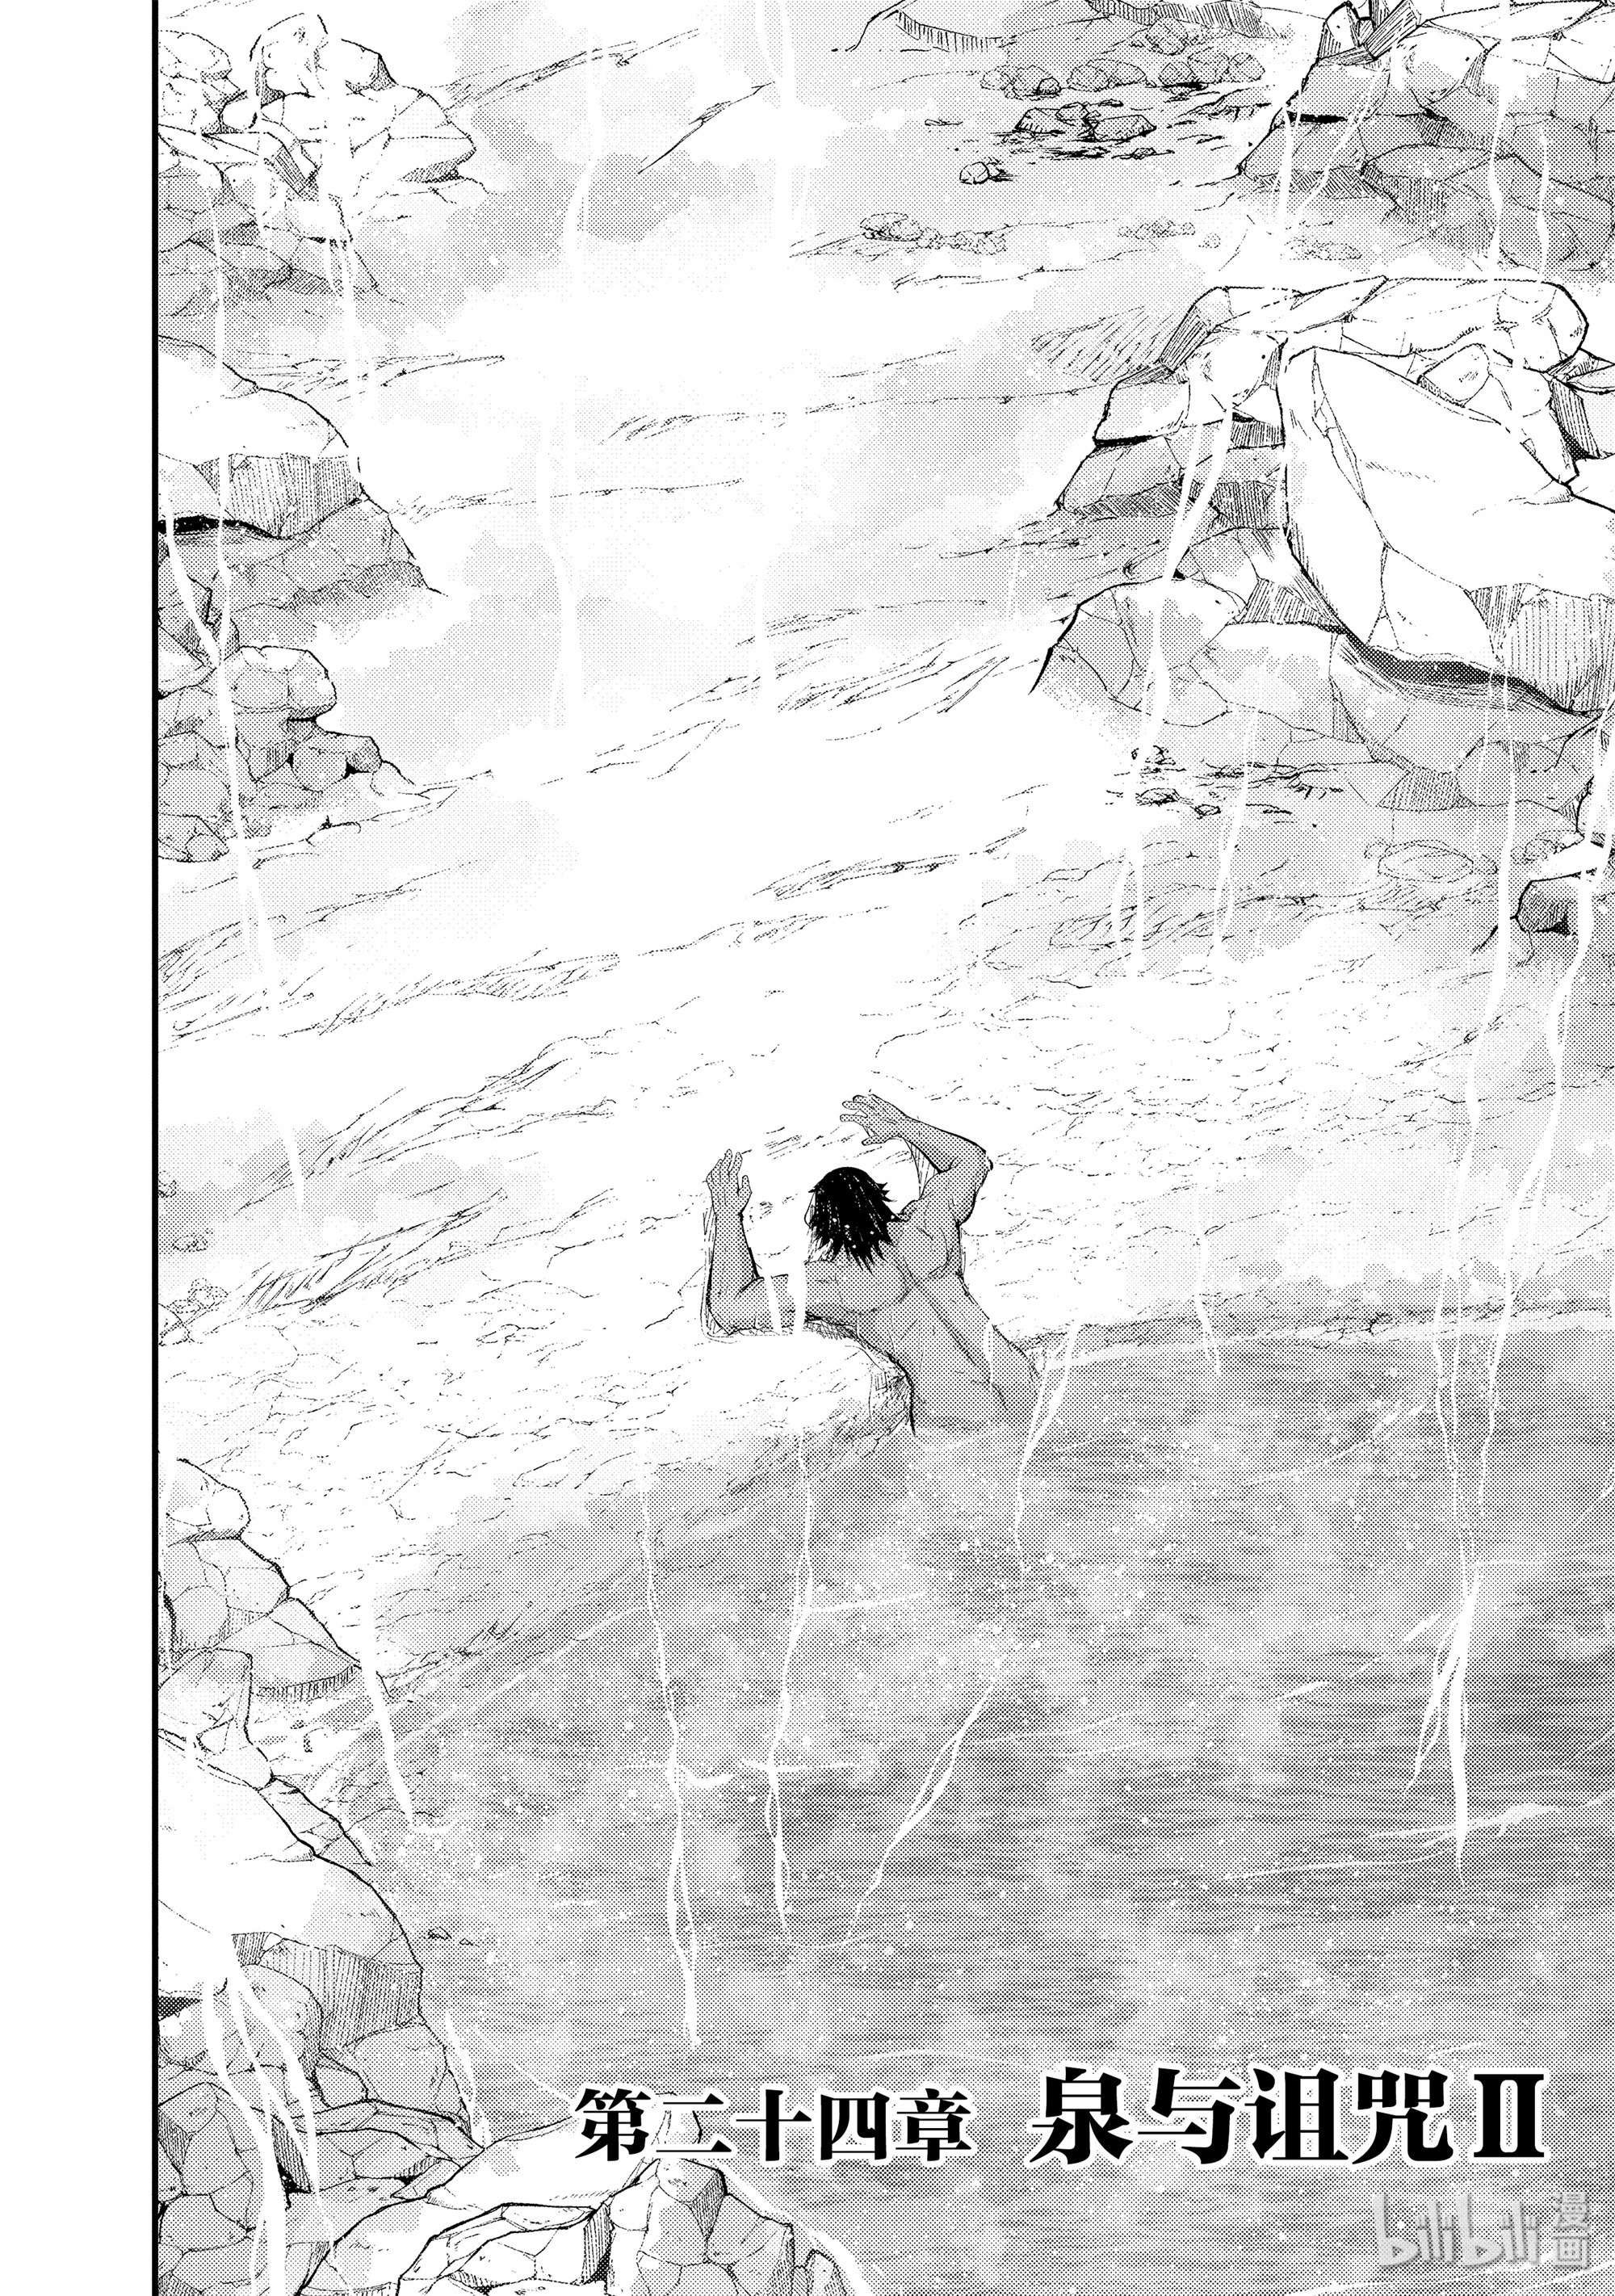 《骸骨骑士大人异世界冒险中》24 泉与诅咒Ⅱ第2页